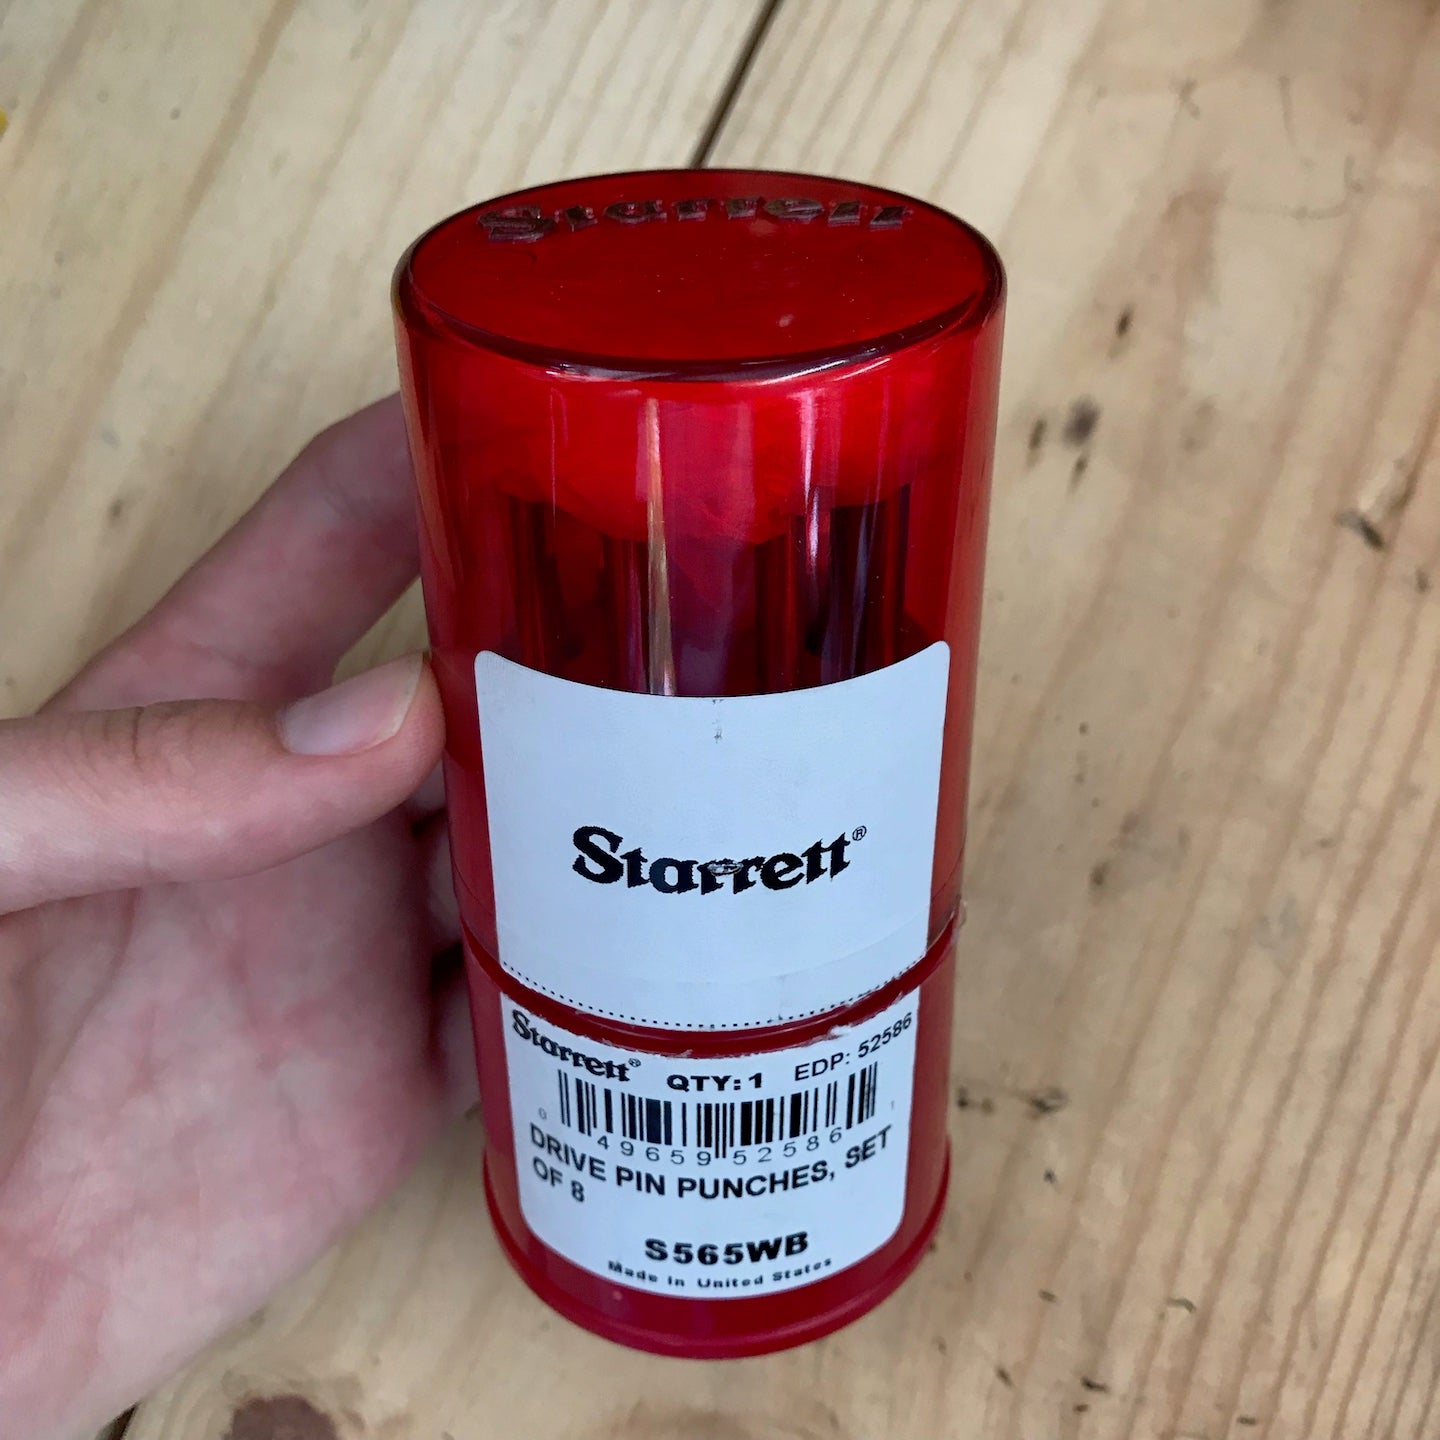 Starrett 8 Pc. Drive Pin Punch Set (S565WB)